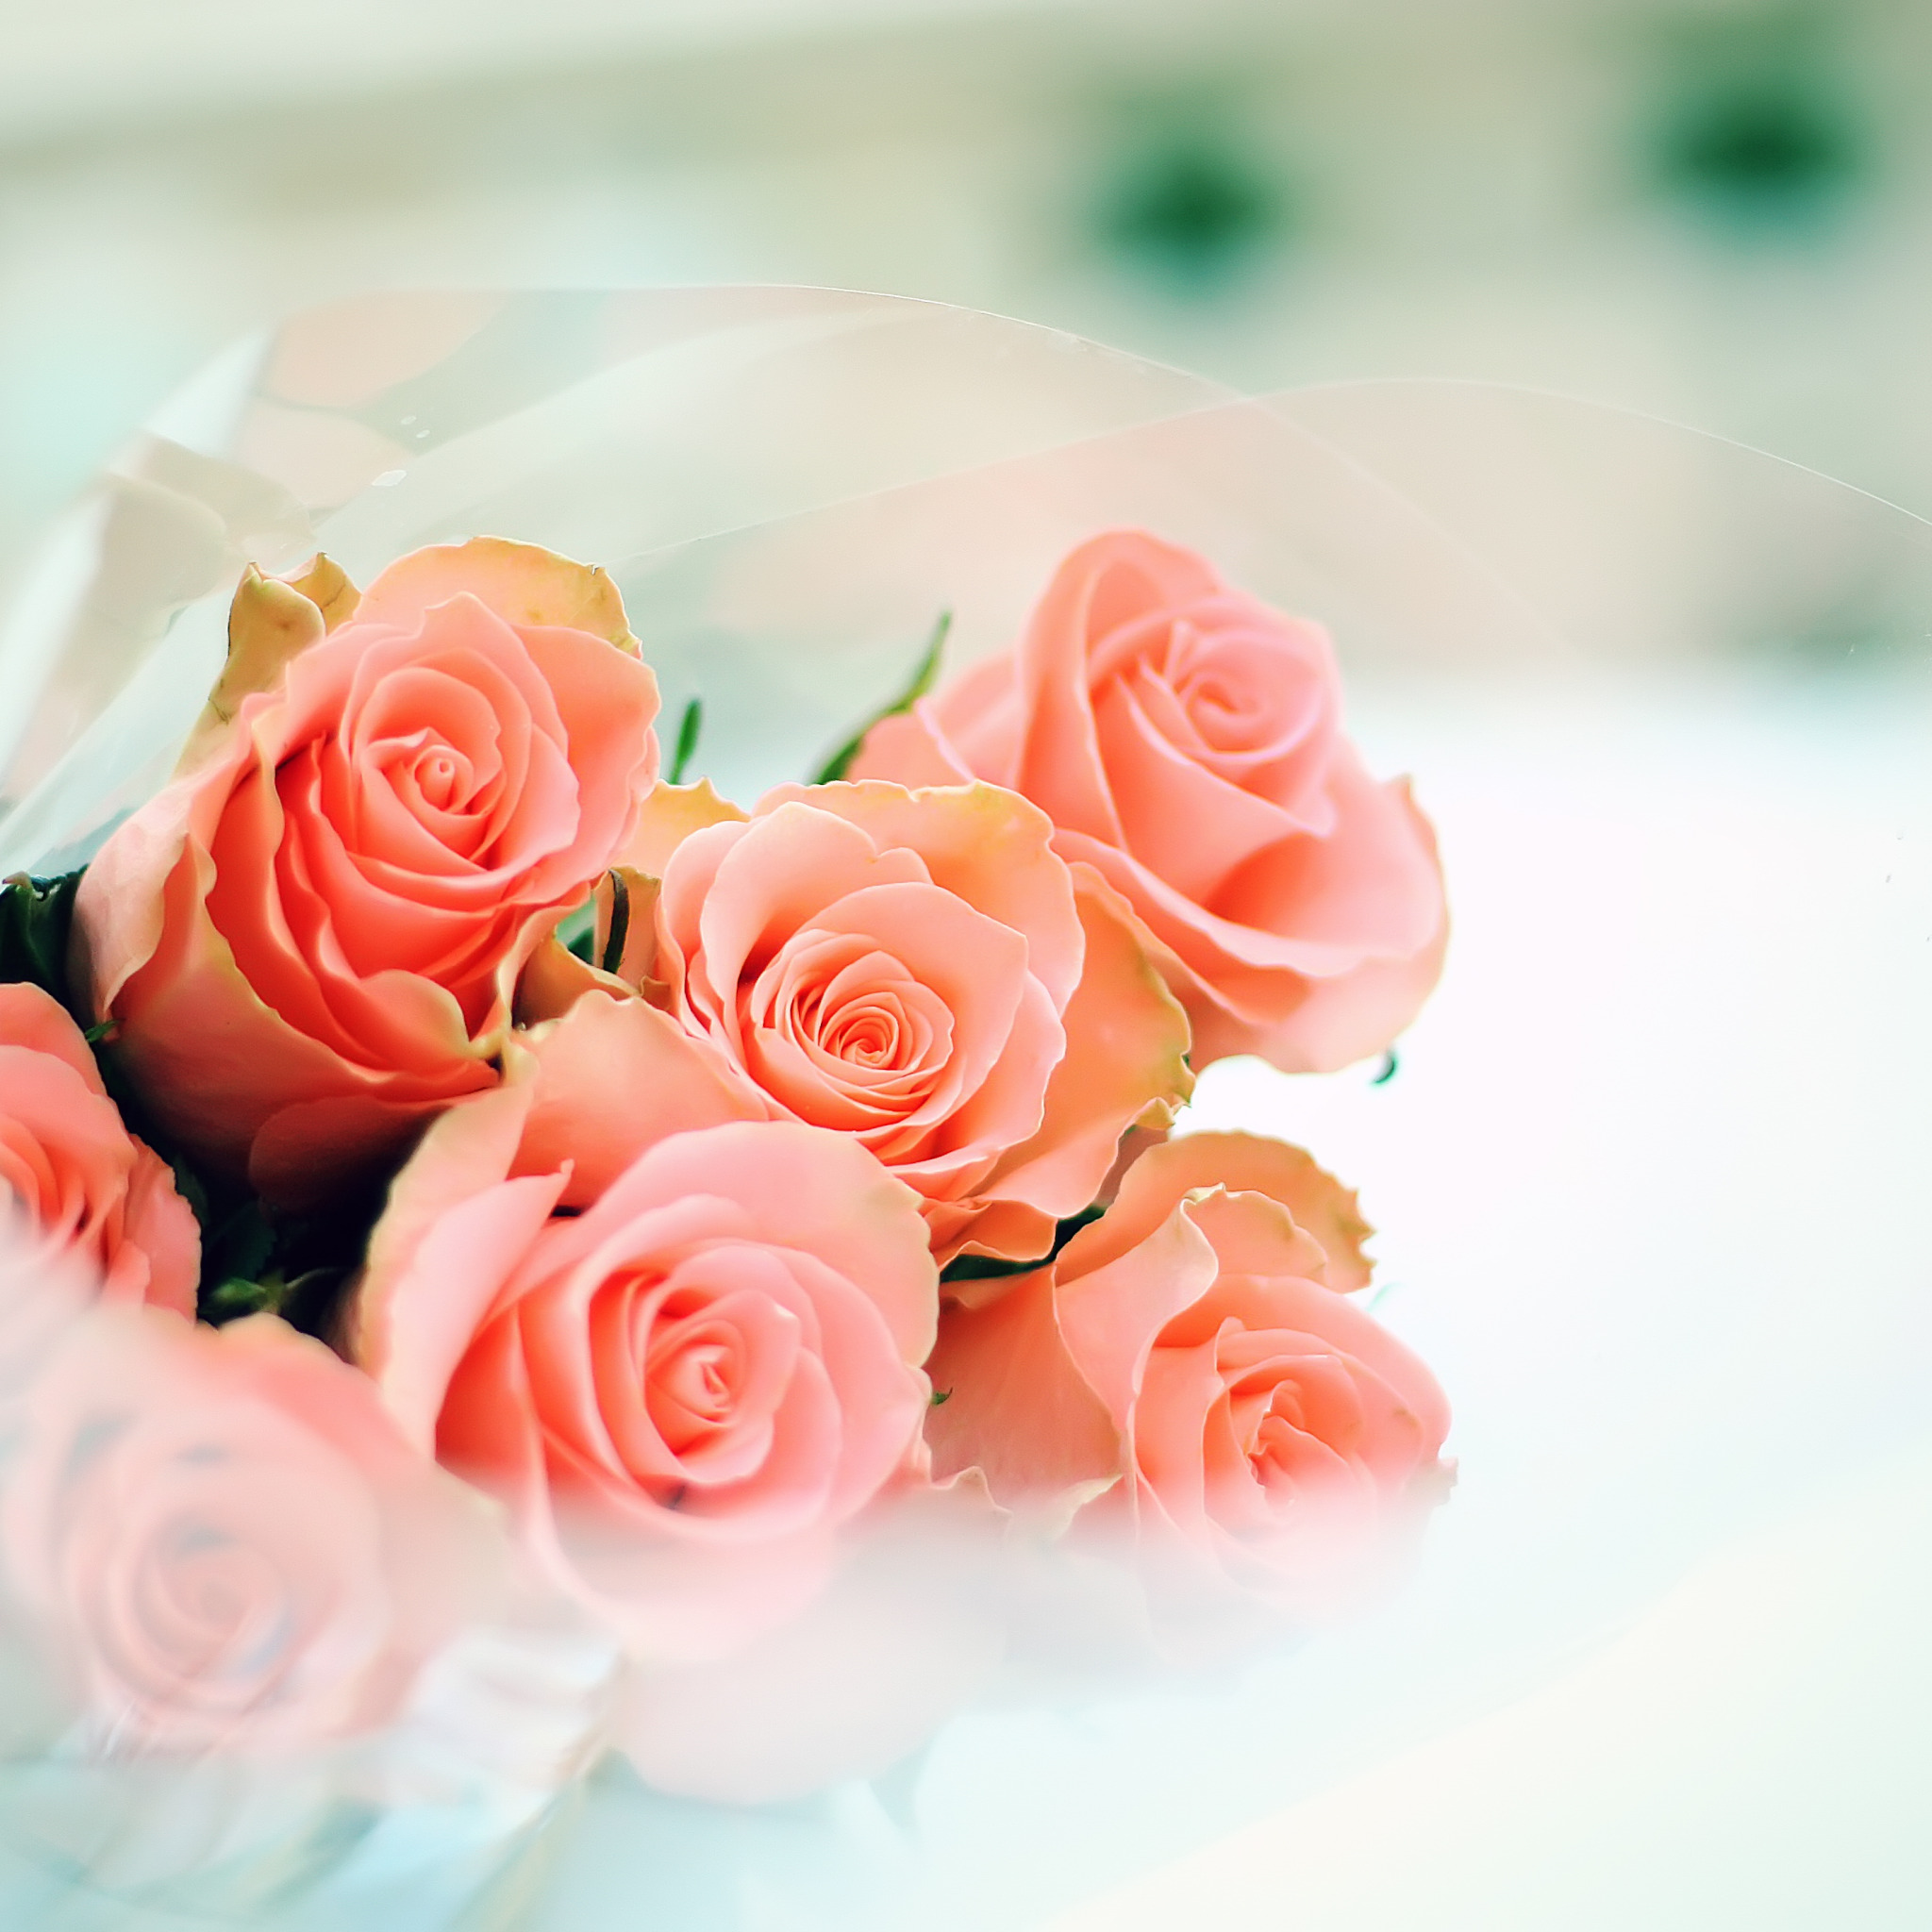 Поздравить куму красиво. С днем рождения. Открытки с розами красивые. Цветы женщине красивые и нежные. Нежное поздравление с днем рождения.